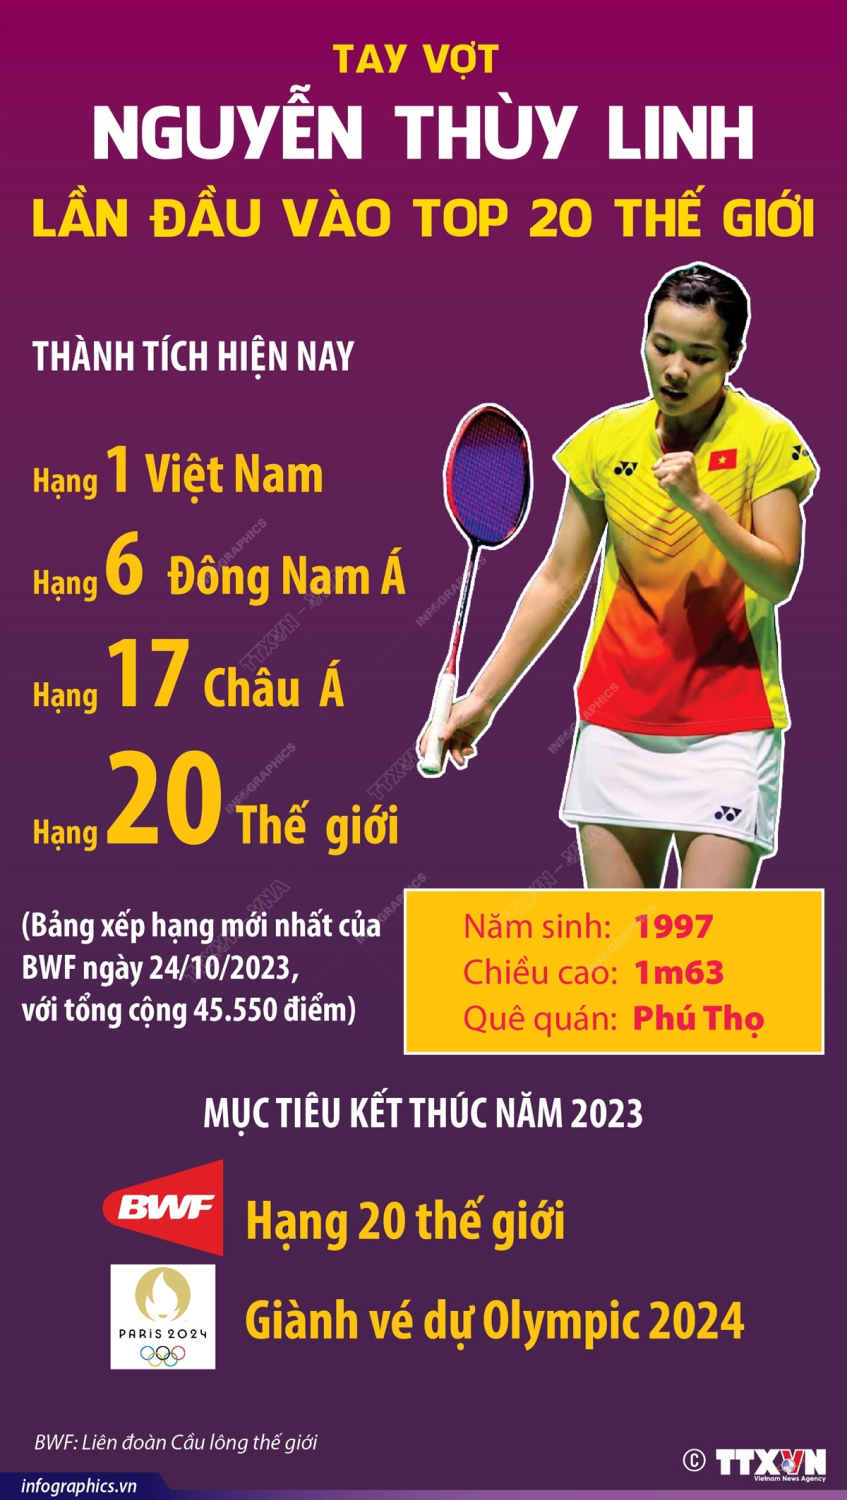 Nguyễn Thùy Linh leo hạng trong bảng xếp hạng thế giới cầu lông